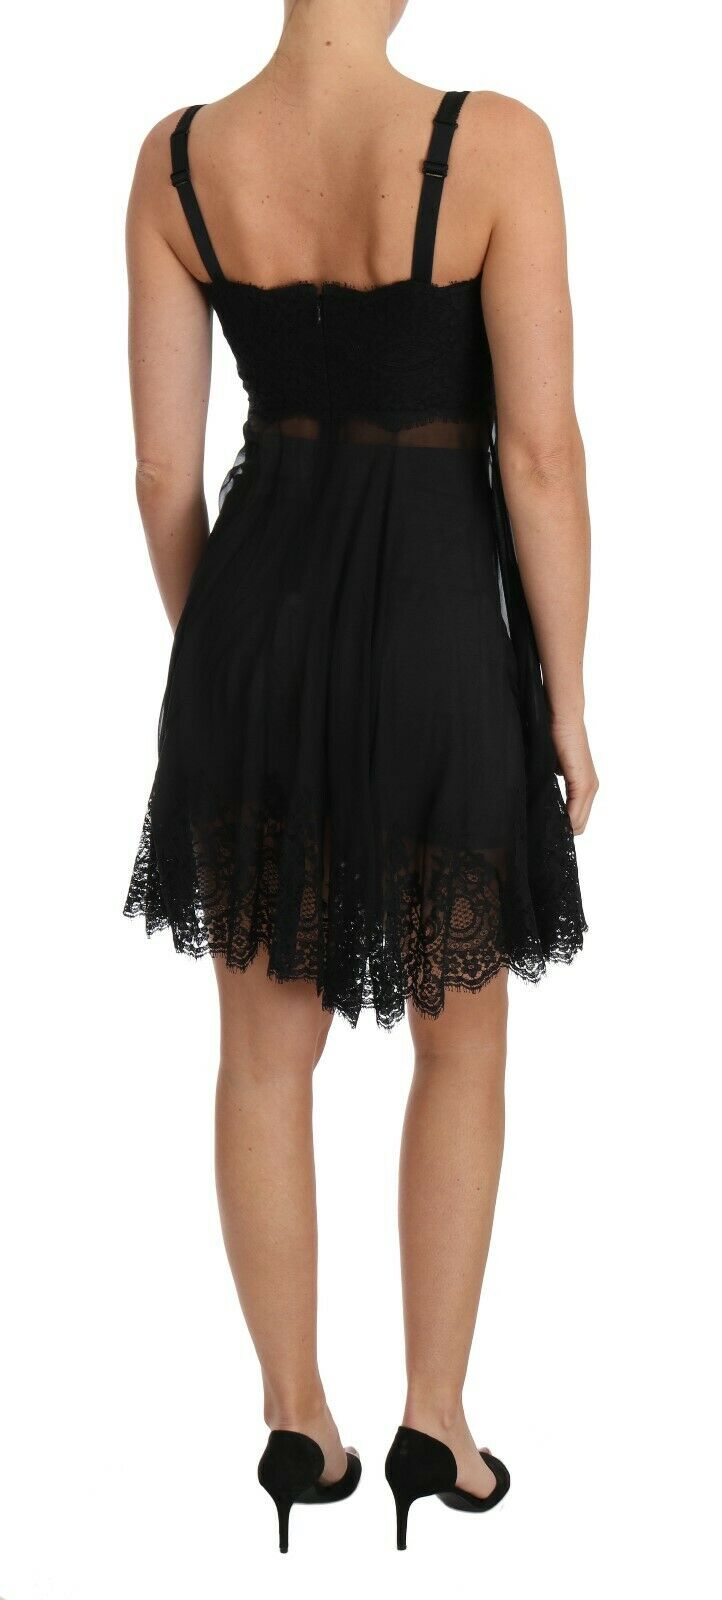 Black Silk Lace Dress Chemise Lingerie - Avaz Shop